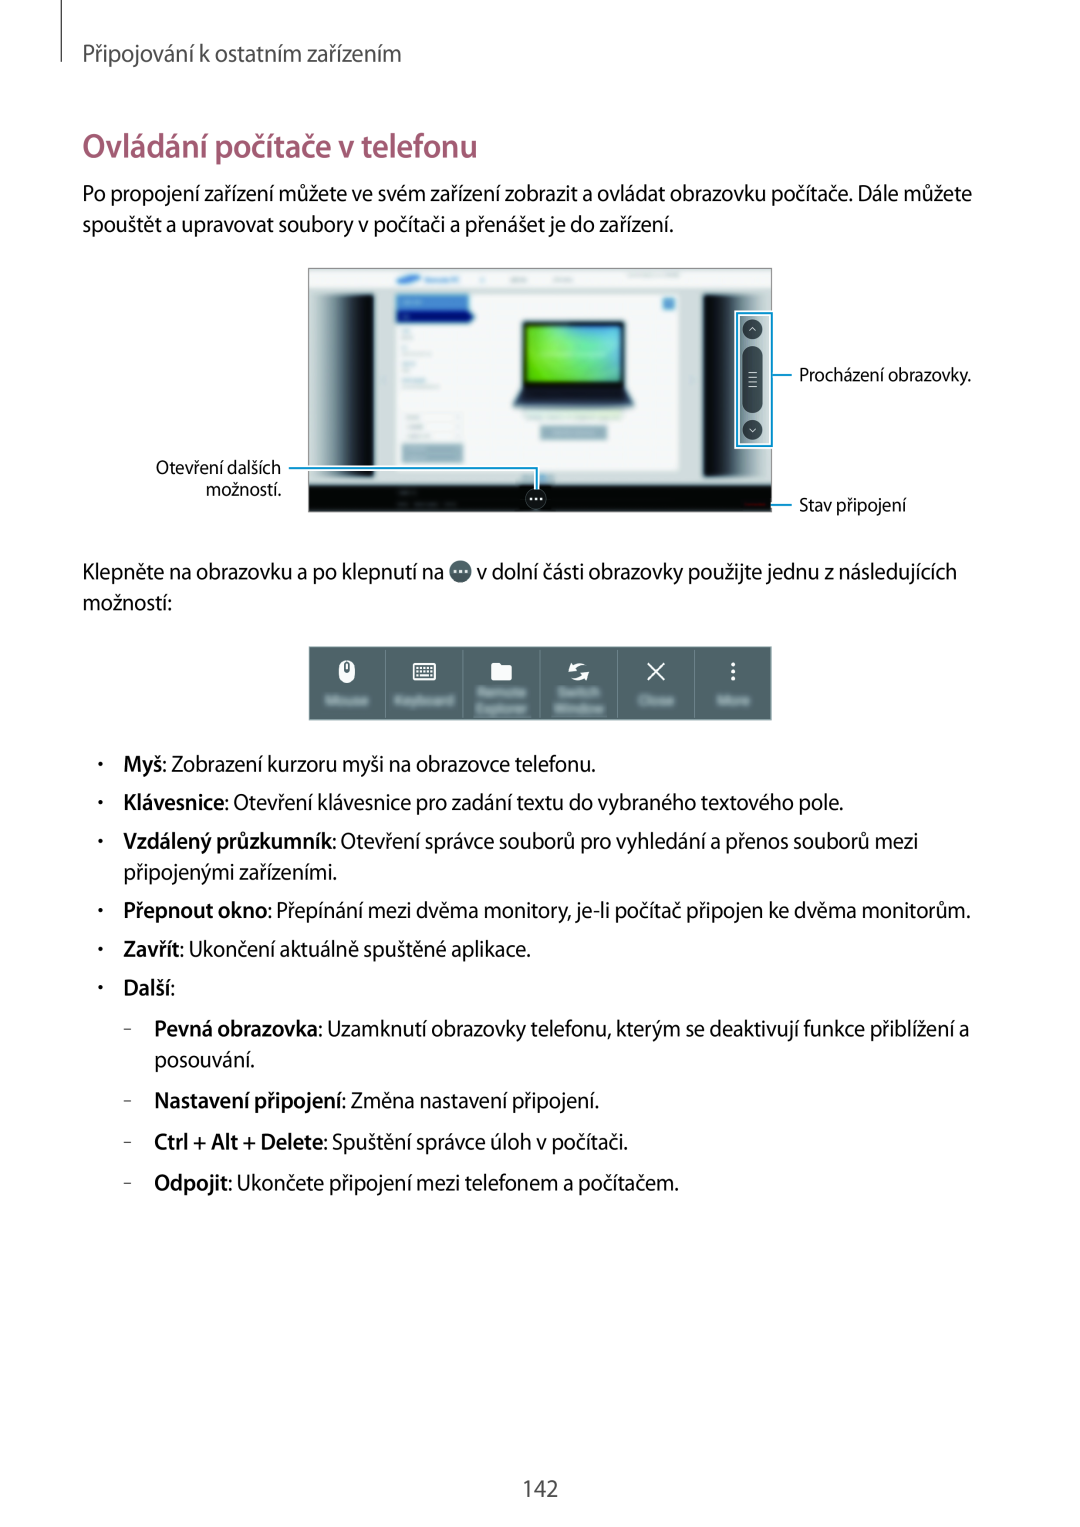 Samsung SM-T700NTSAEUR, SM-T700NZWAXEO manual Ovládání počítače v telefonu, Další, Připojování k ostatním zařízením 